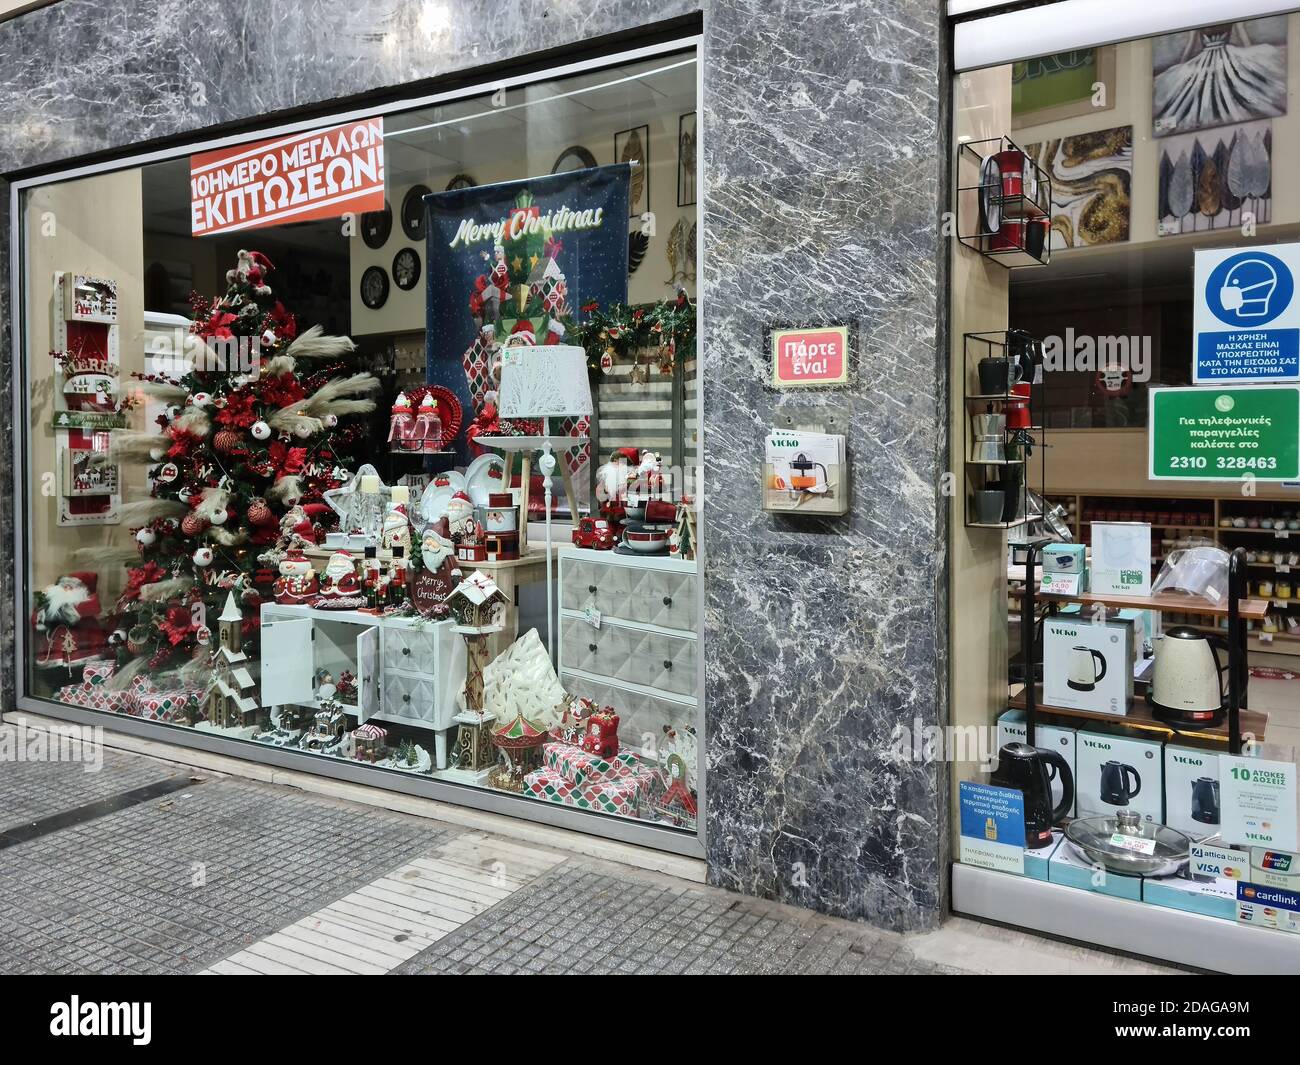 Thessaloniki, Griechenland - 9. November 2020: Hellenic leer Weihnachten Schaufenster. Beleuchtete Nachtansicht des saisonal dekorierten Ladens aufgrund von Maßnahmen des Covid-19 geschlossen. Stockfoto